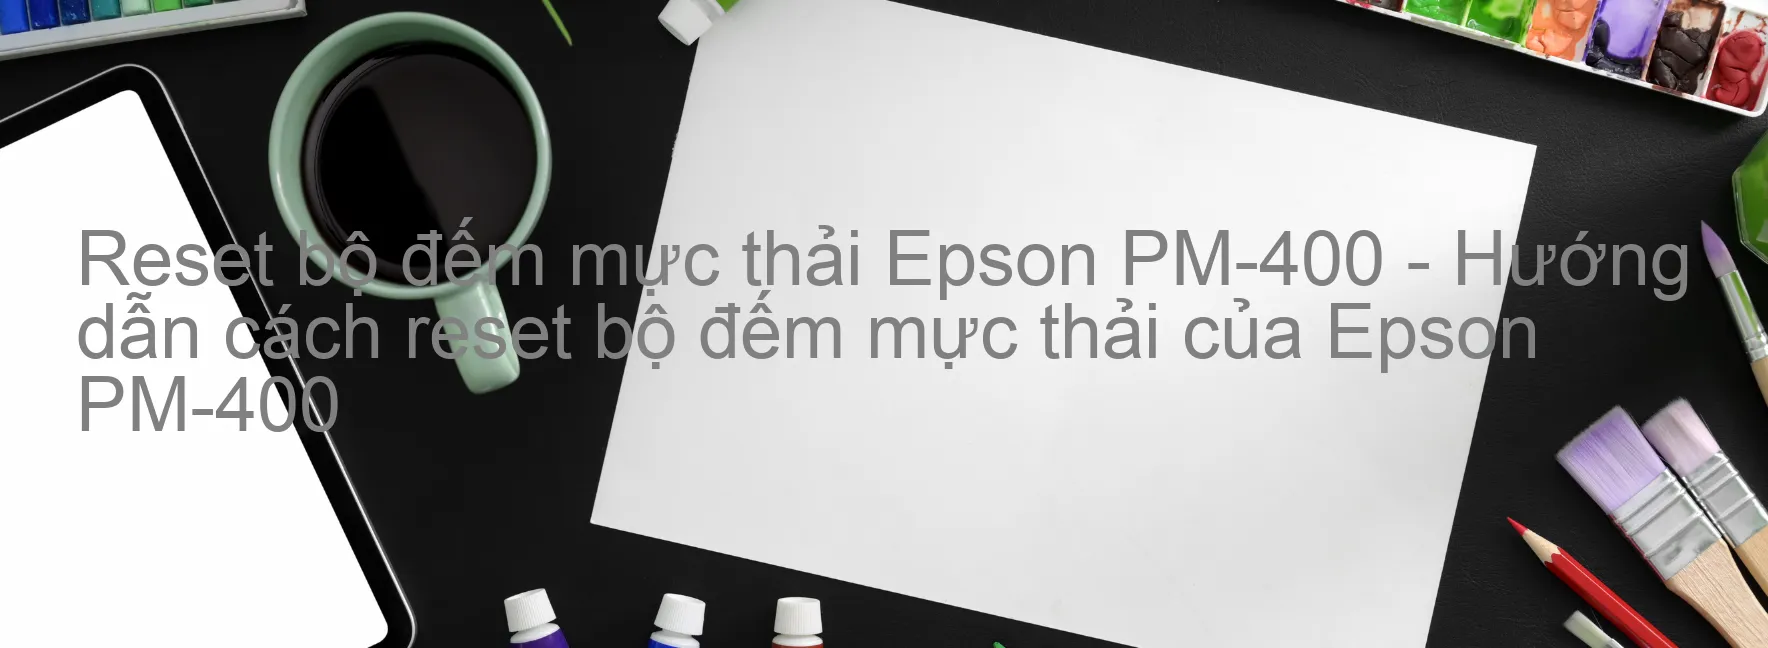 Reset bộ đếm mực thải Epson PM-400 - Hướng dẫn cách reset bộ đếm mực thải của Epson PM-400